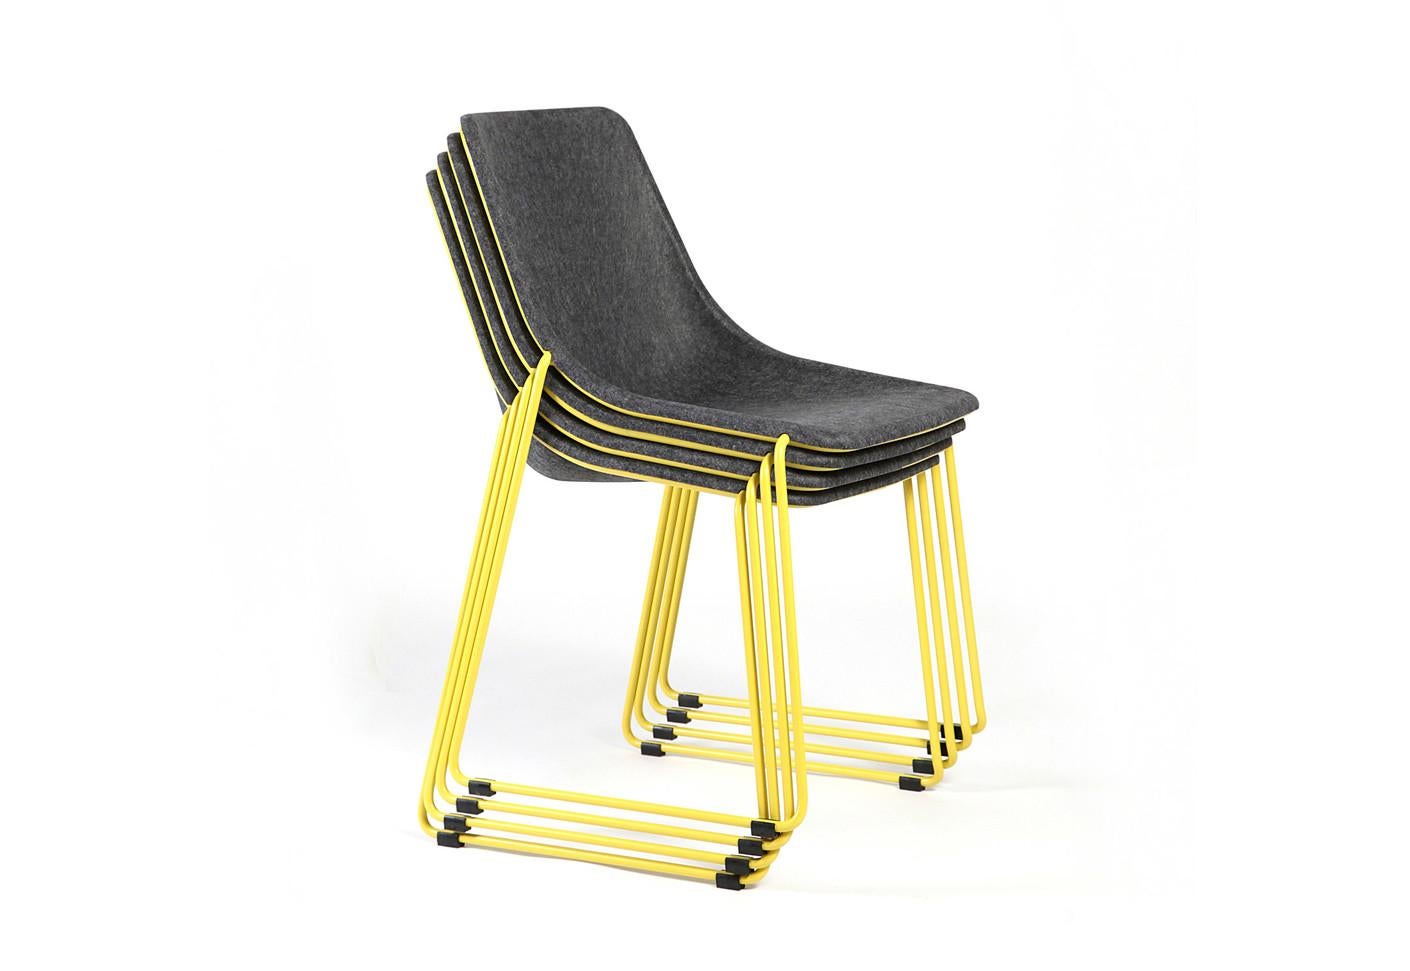 Kola Stack RA est une chaise empilable qui combine l'ingénieuse assise en feutre Kola avec une construction solide mais légère de piétement en acier. Cette combinaison de matériaux permet à la chaise d'offrir un confort, une légèreté et une